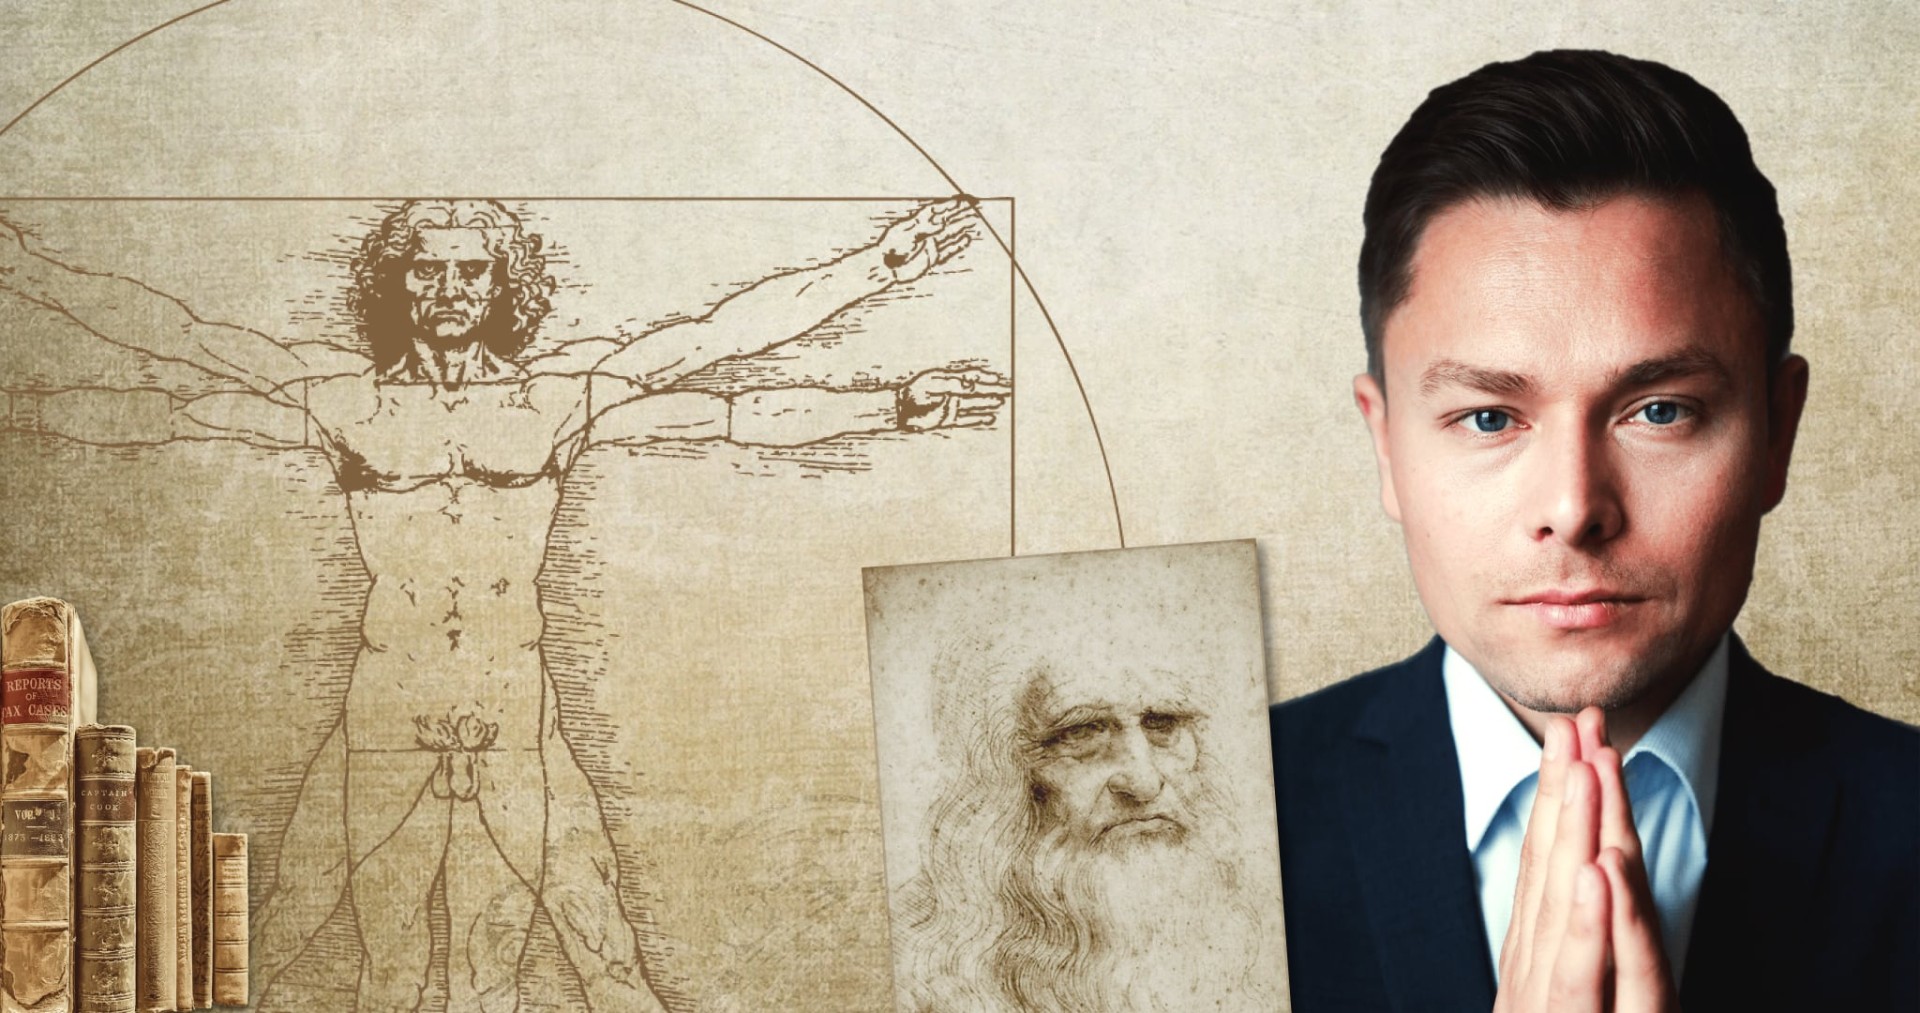 Da Vinci Master - Steigere Dein Gehirnpotential